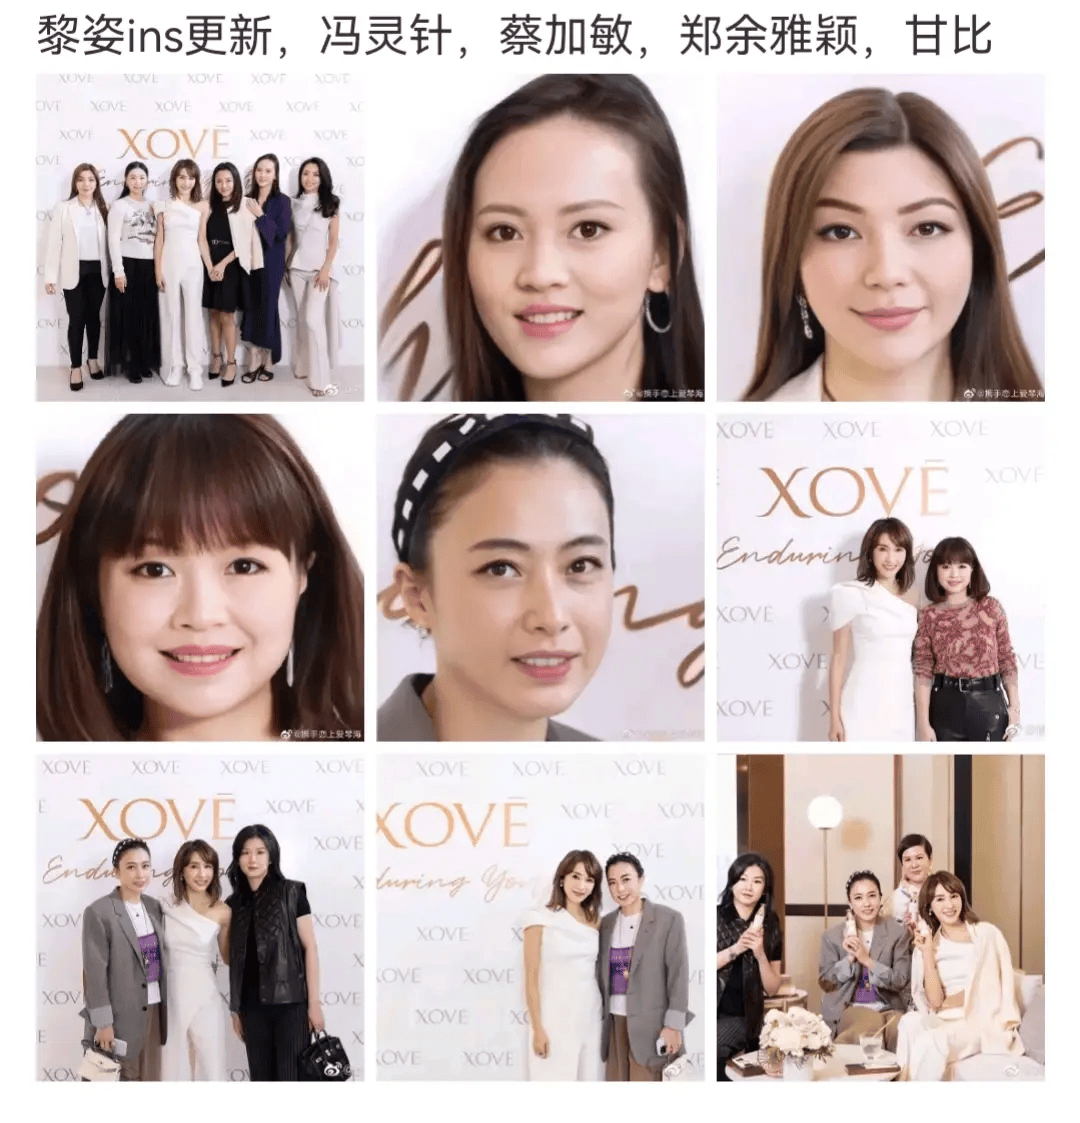 同时还有冯灵针,蔡加敏和郑余雅颖前来支持黎姿化妆品牌的见面会